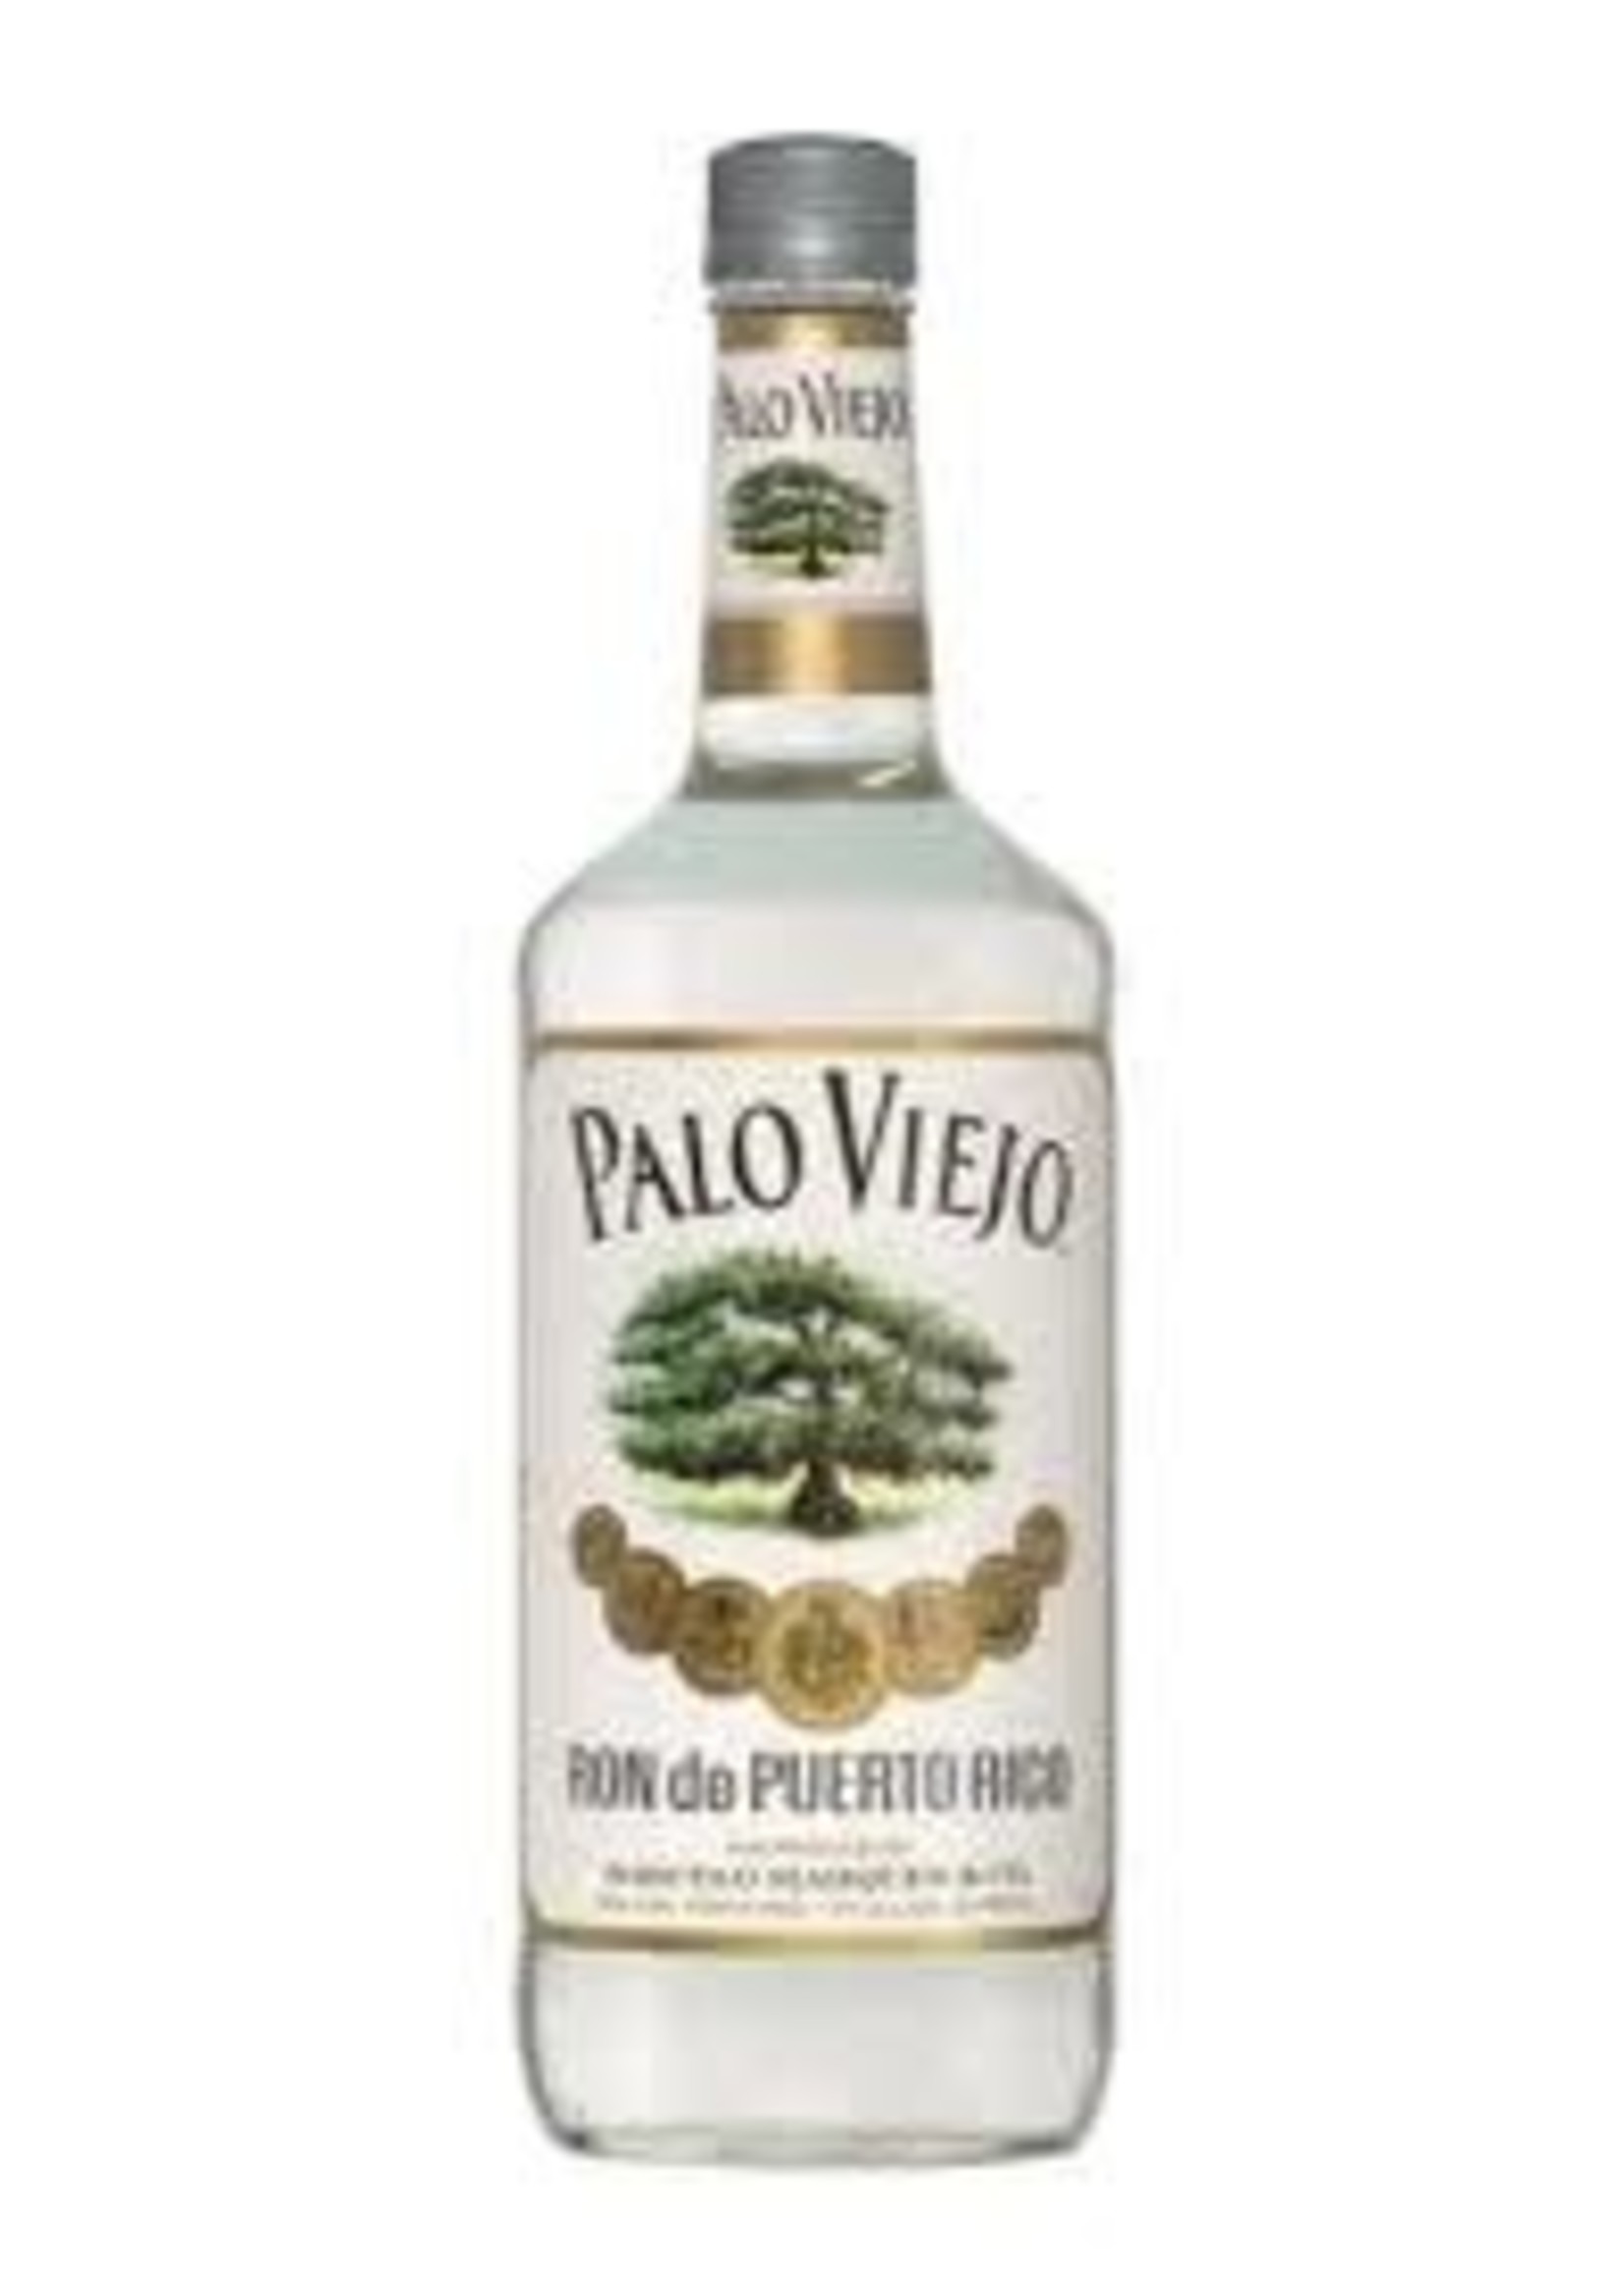 Palo Viejo Palo Viejo / Light Rum